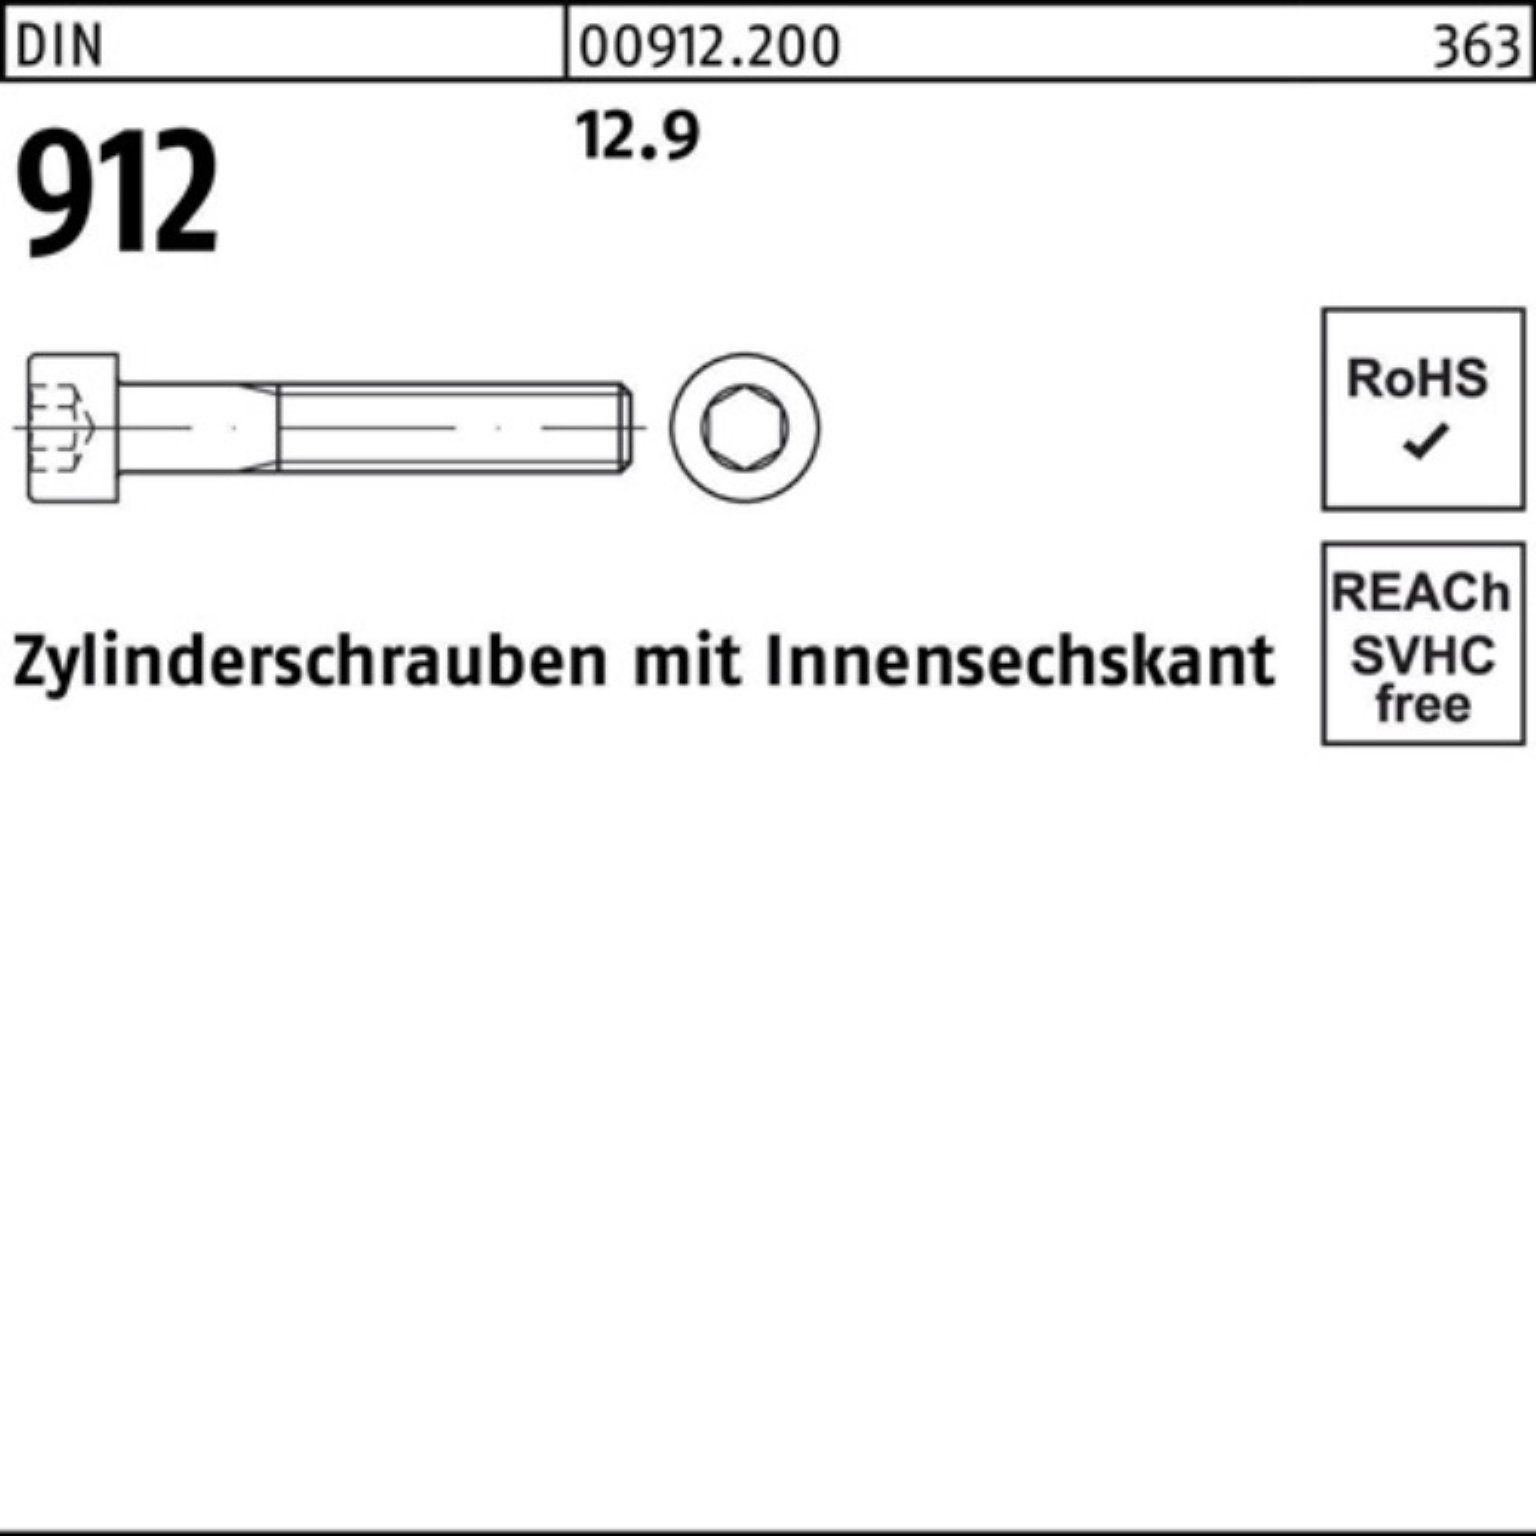 Stück Zylinderschraube Innen-6kt Reyher M10x 100er 100 Pack 912 65 12.9 DIN Zylinderschraube